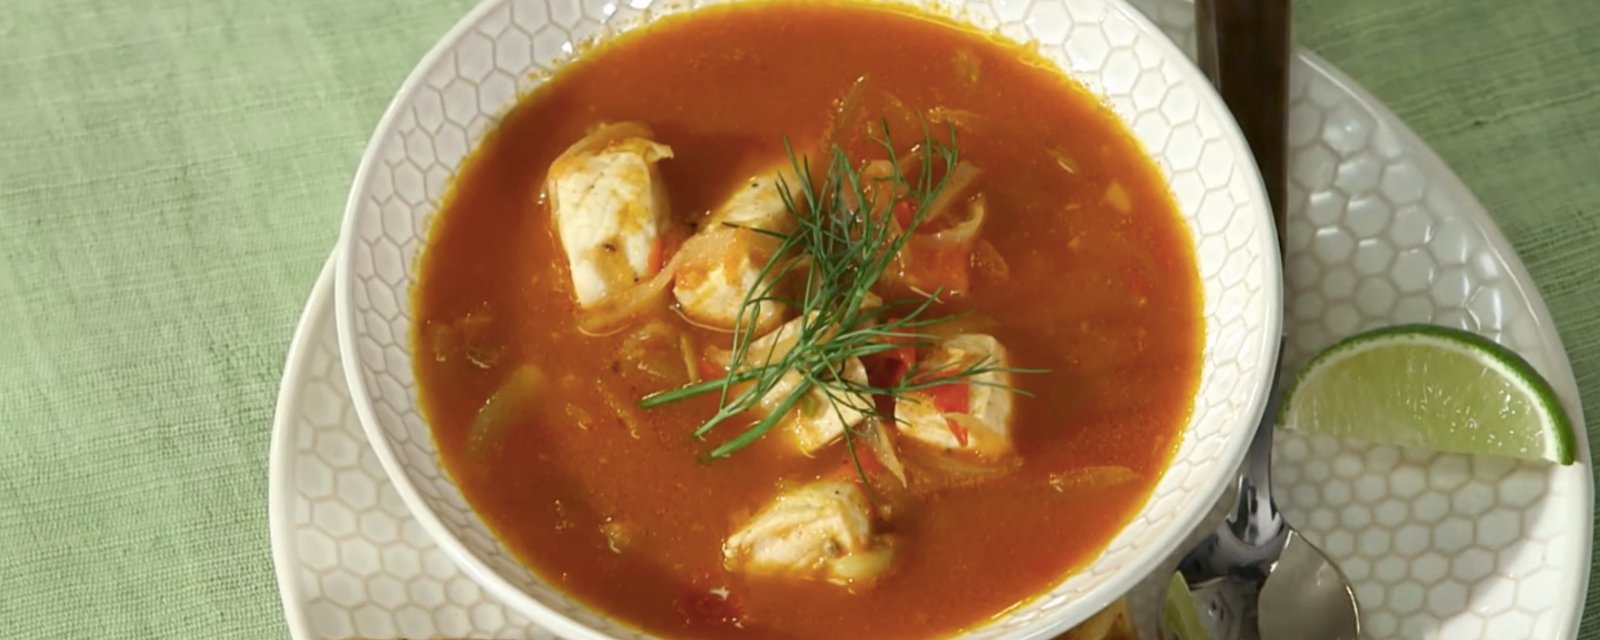 Martha Stewart nous cuisine sa soupe de poisson, quelle chance!